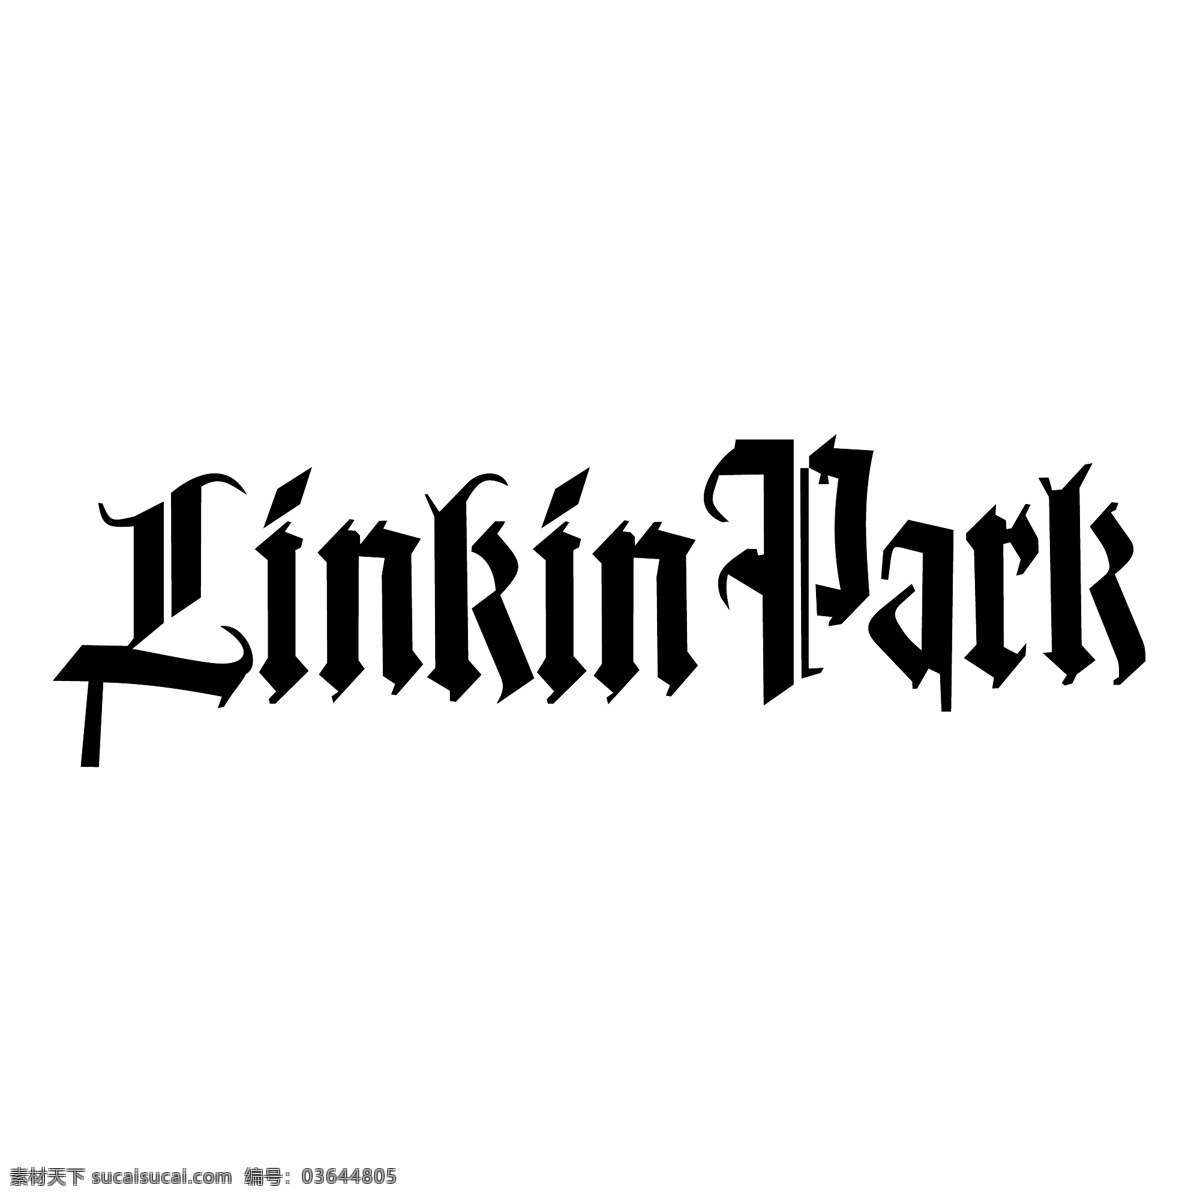 公园 林肯 林肯公园 标志 矢量 向量 林肯公园2 矢量林肯公园 矢量图 建筑家居